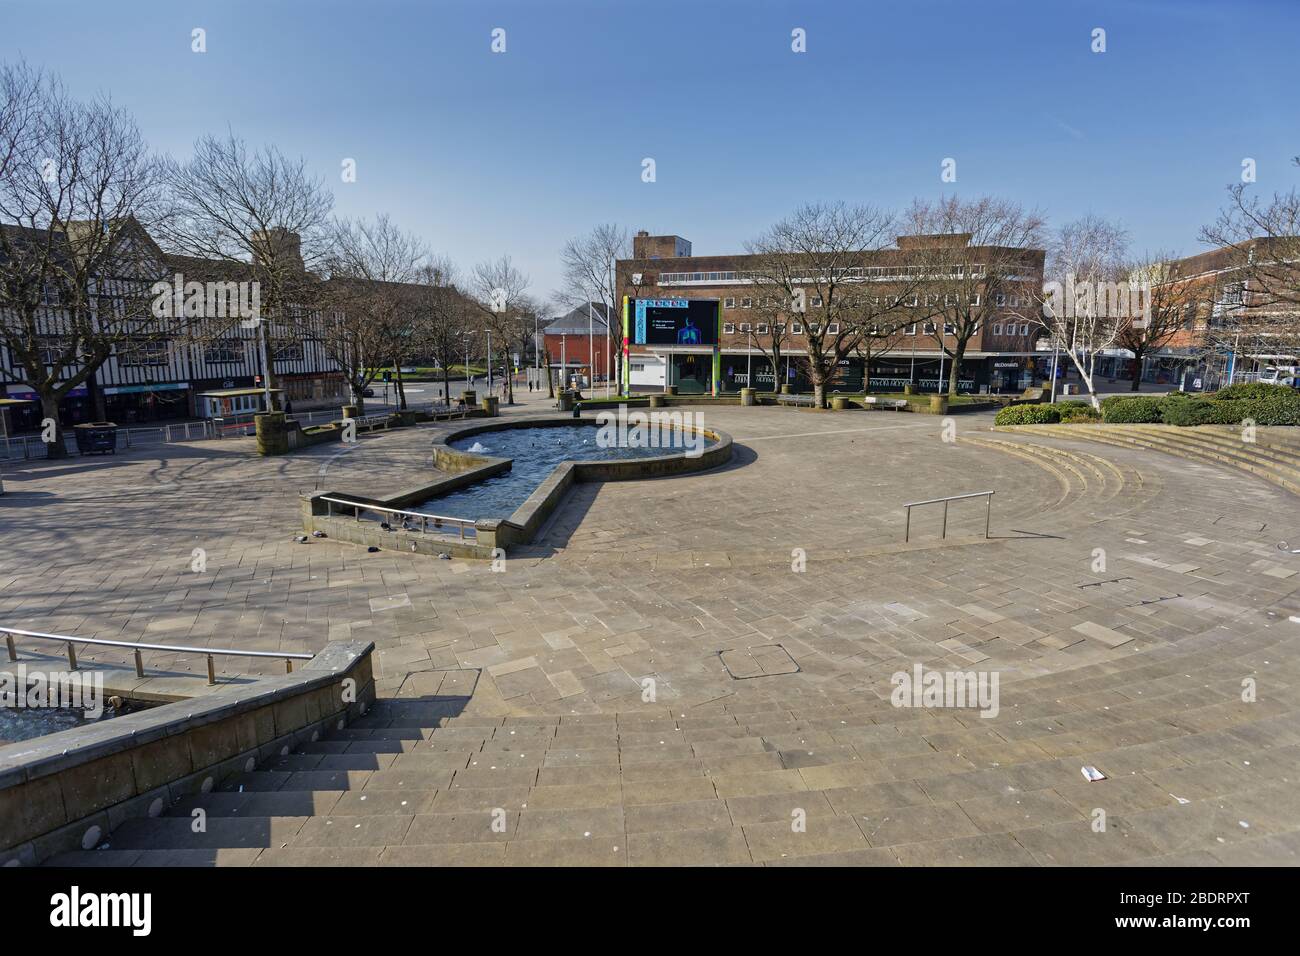 Im Bild: Castle Square im verlassenen Swansea Stadtzentrum, Wales, Großbritannien. Dienstag 24 März 2020 Re: Covid-19 Coronavirus Pandemie, UK. Stockfoto